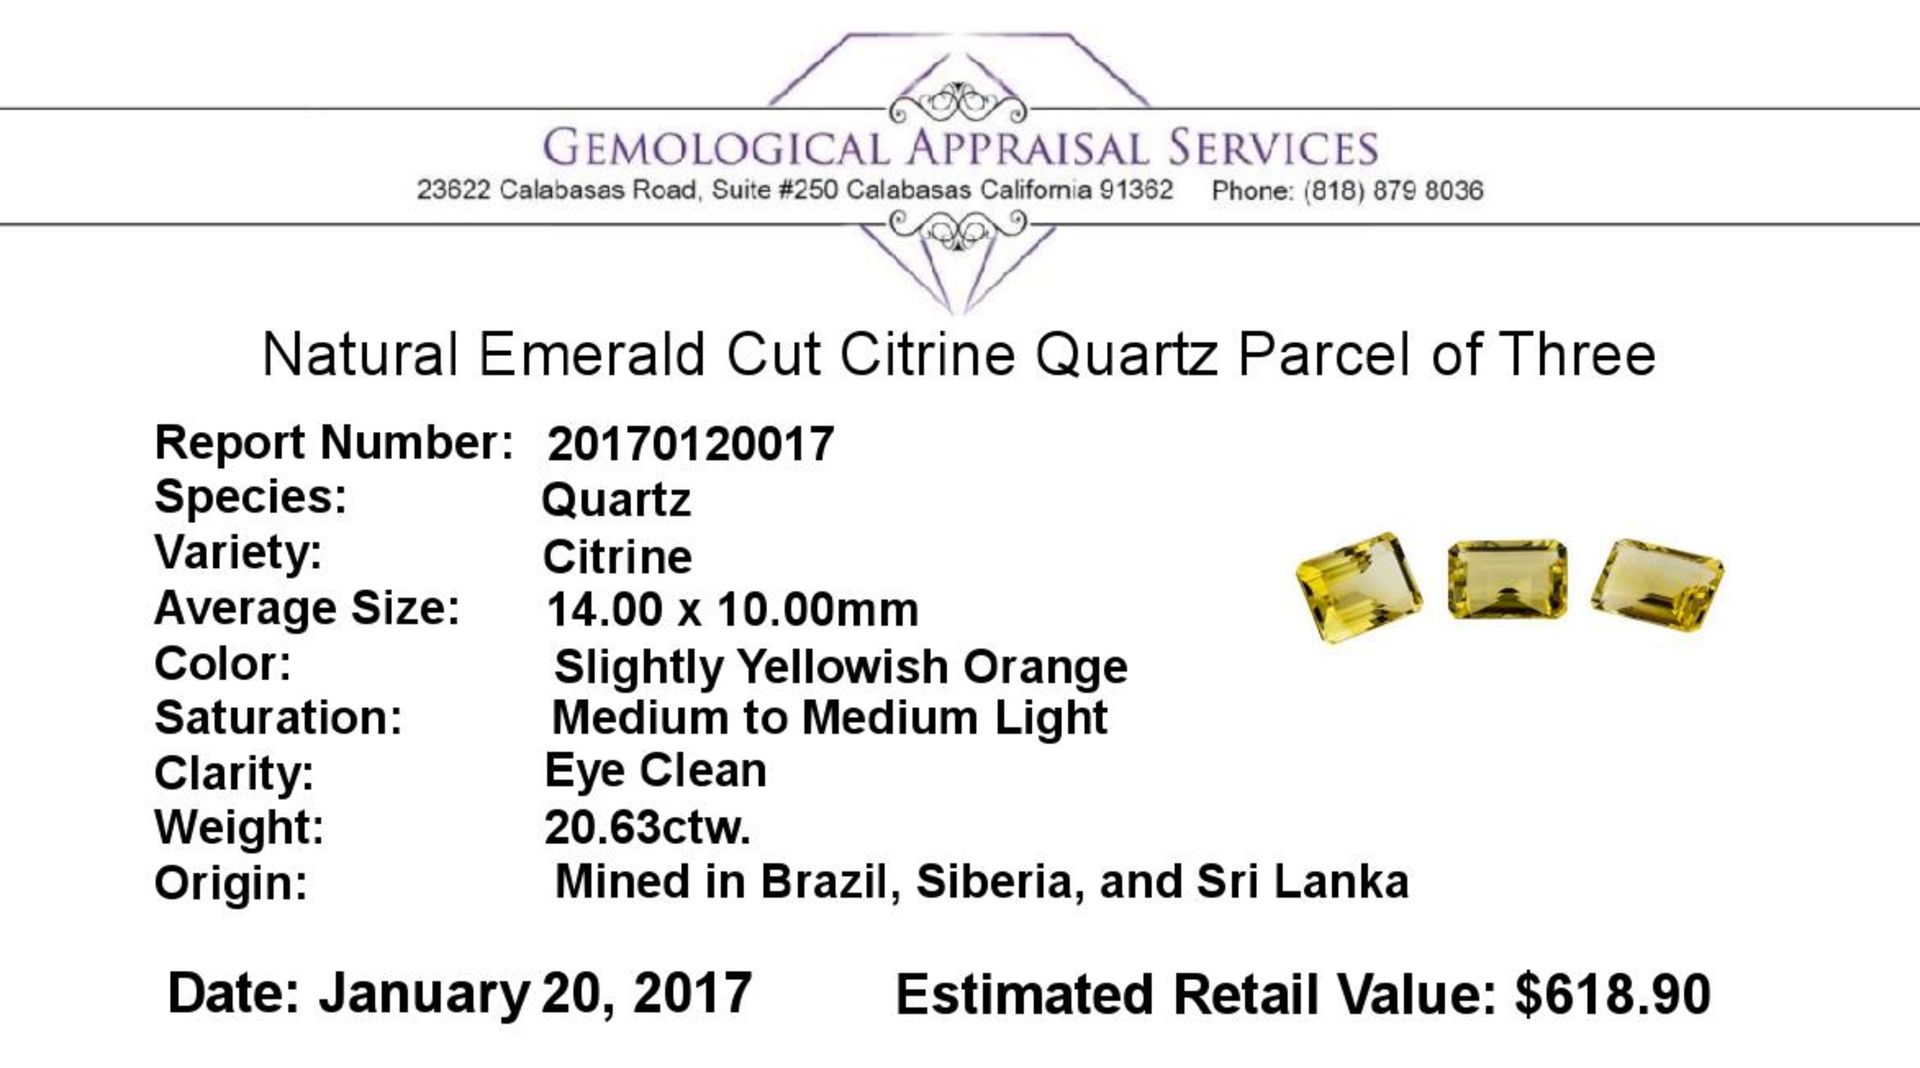 20.63 ctw.Natural Emerald Cut Citrine Quartz Parcel of Three - Image 3 of 3